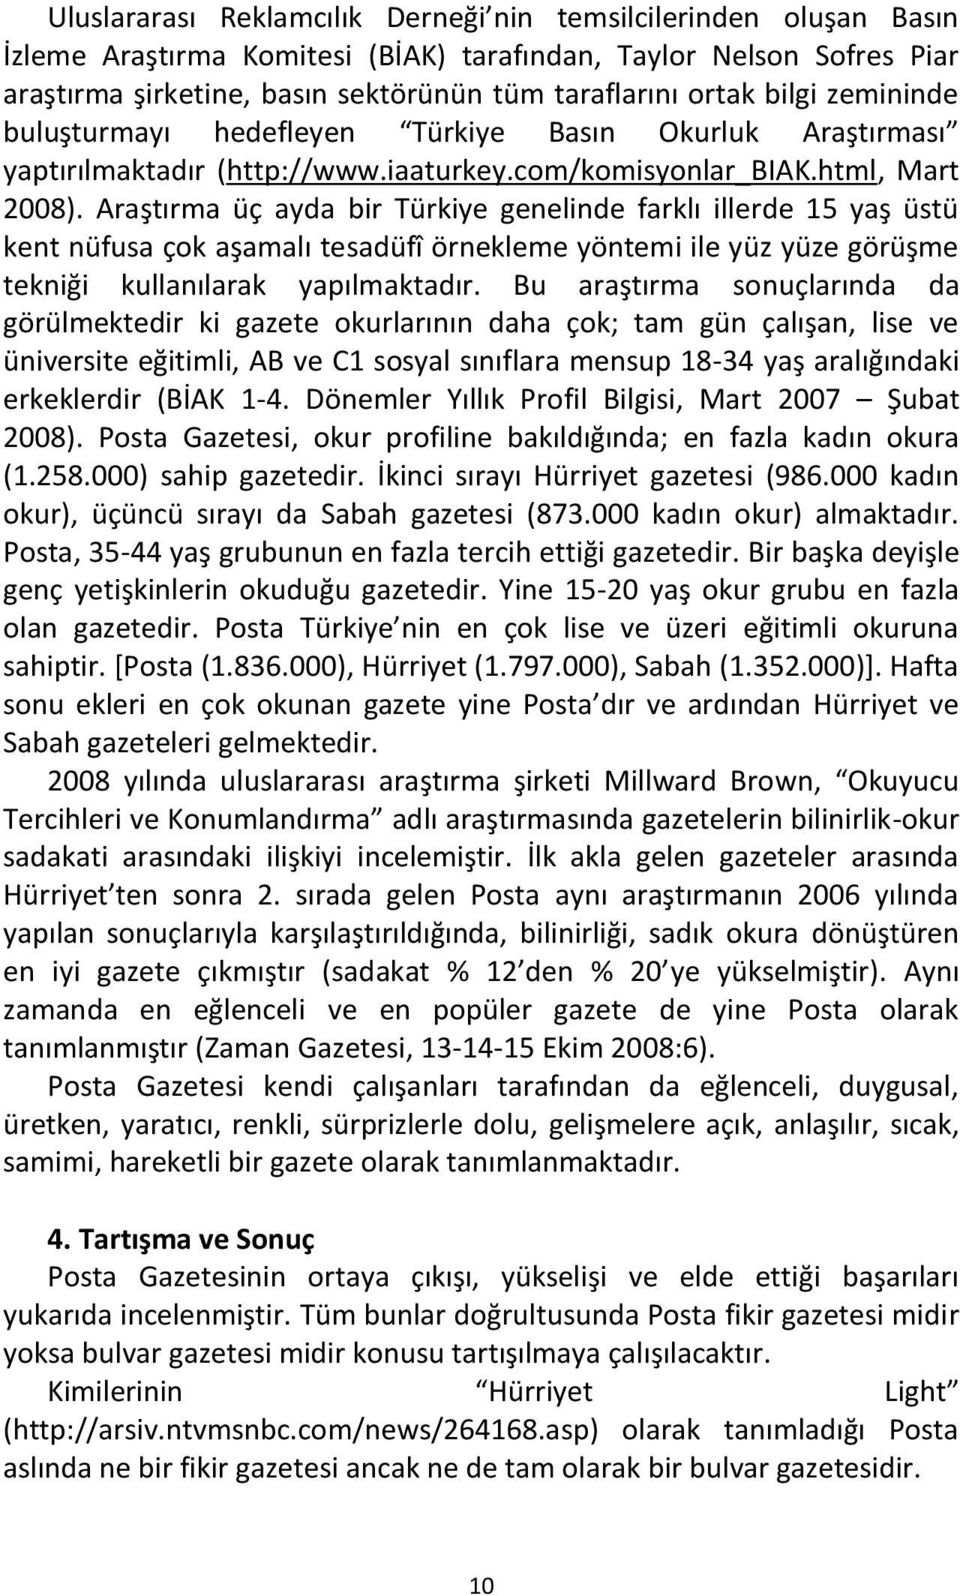 Araştırma üç ayda bir Türkiye genelinde farklı illerde 15 yaş üstü kent nüfusa çok aşamalı tesadüfî örnekleme yöntemi ile yüz yüze görüşme tekniği kullanılarak yapılmaktadır.